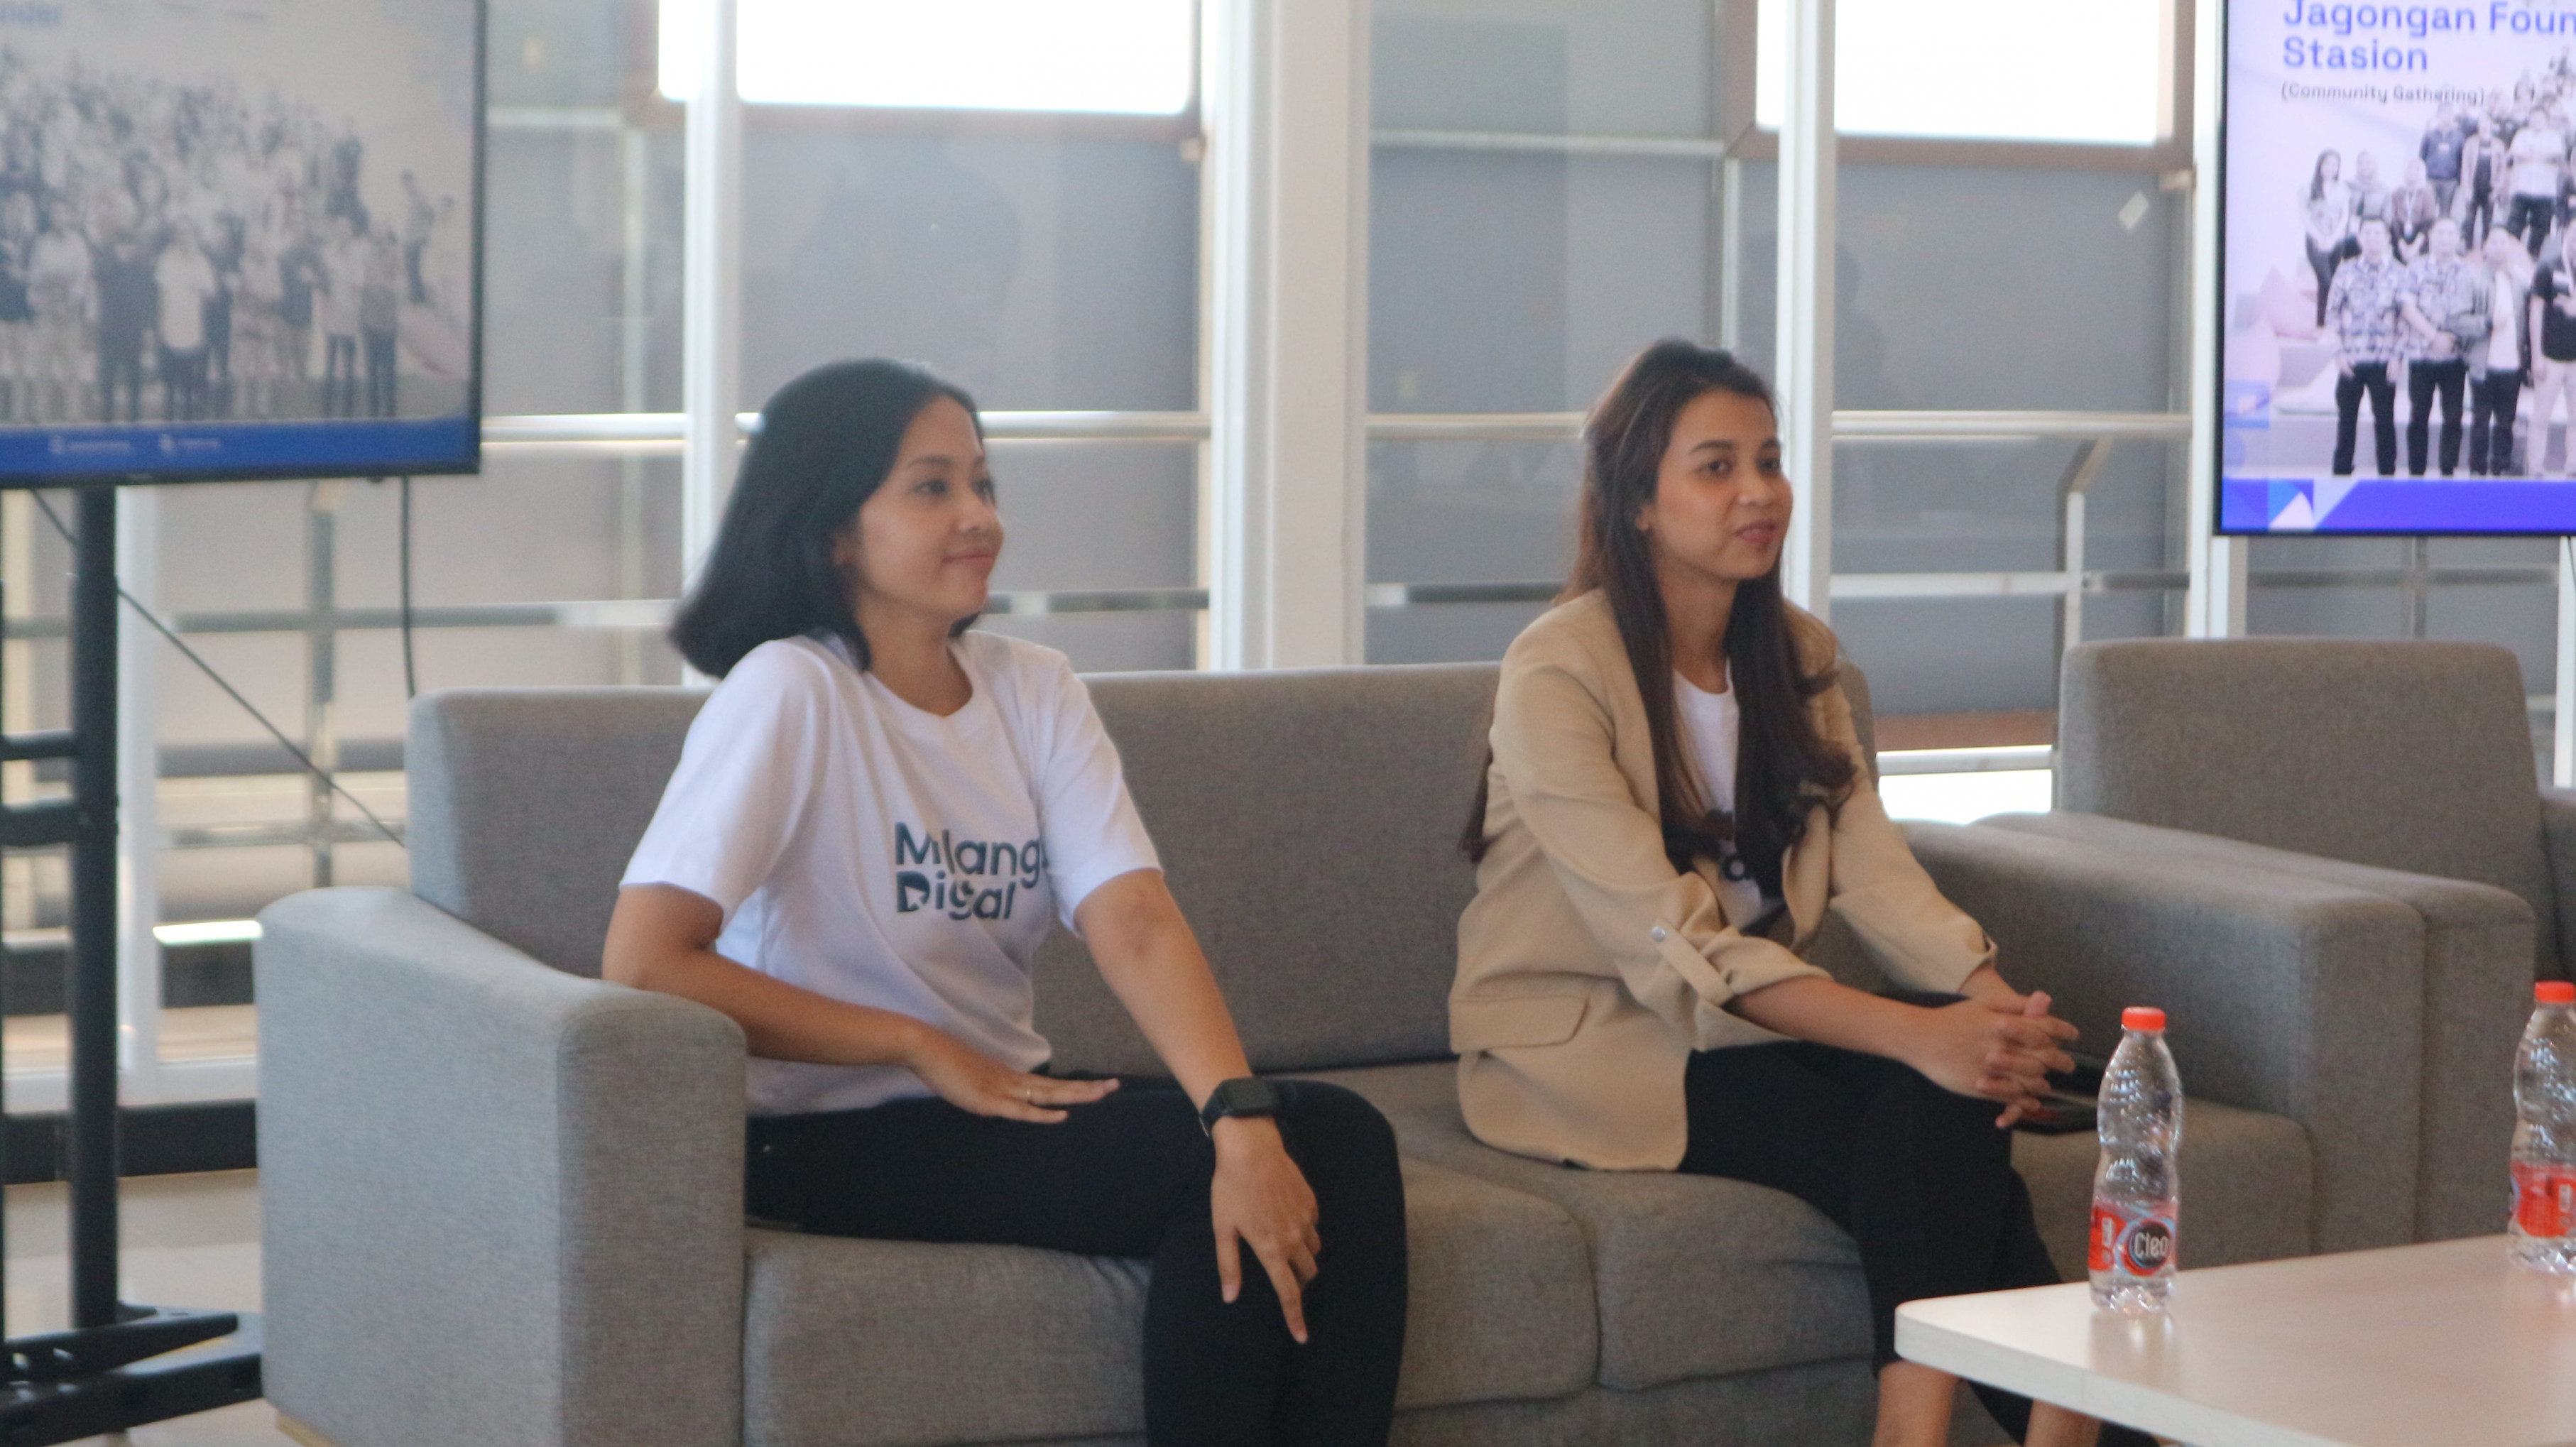 Jagongan Startup Malang-Sharing Session : Woman in Startup Business